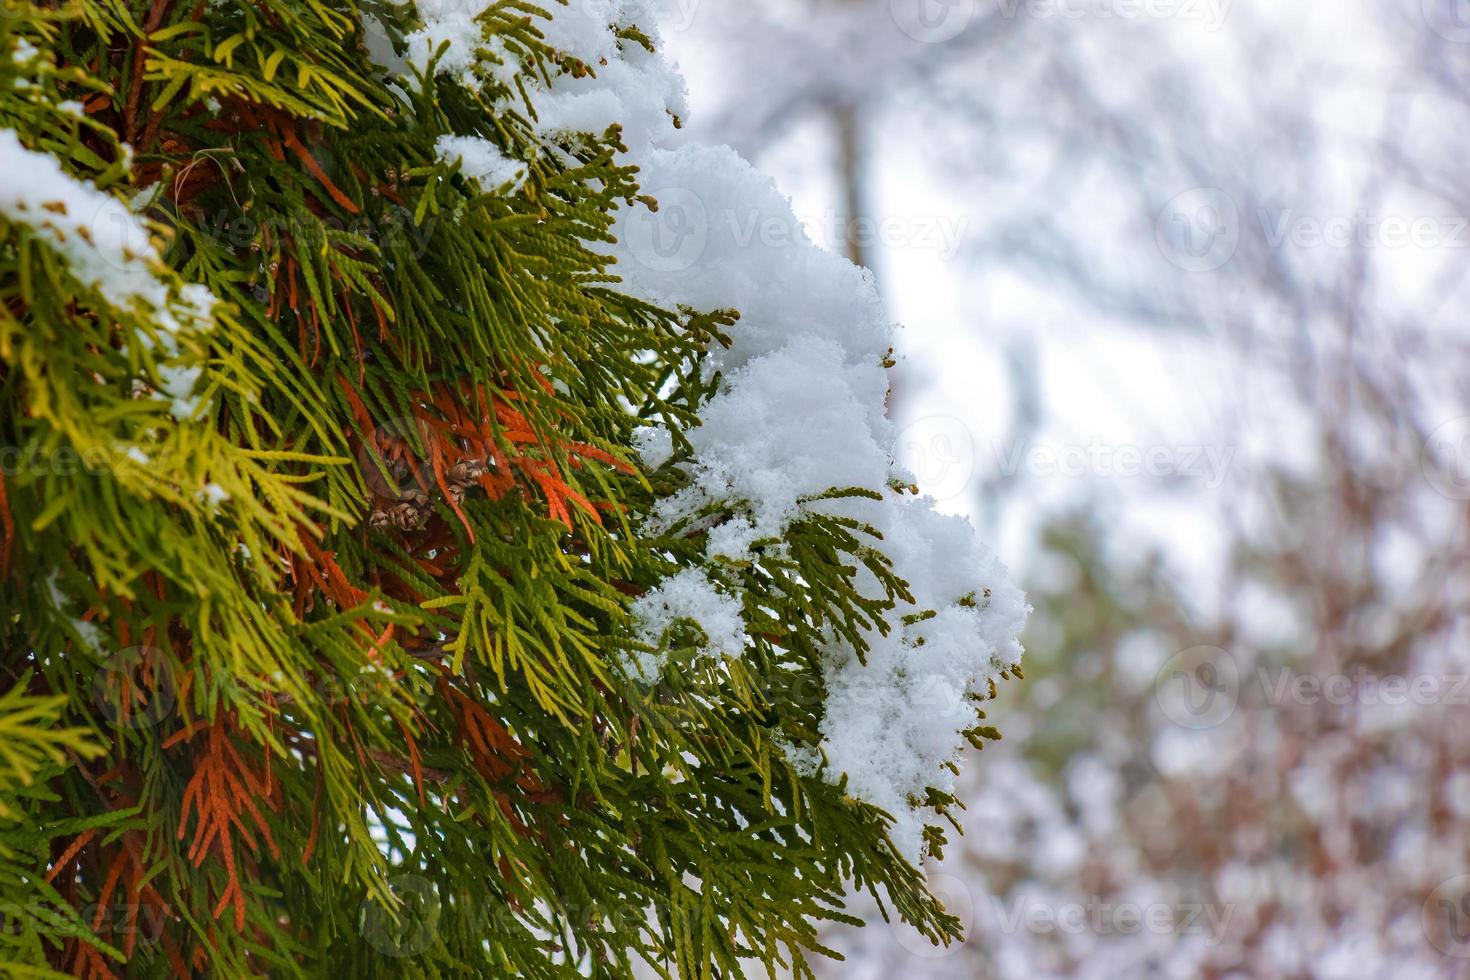 Frais neige sur le branches de thuya occidentalis smaragd. congelé aiguilles de un à feuilles persistantes conifère arbre thuya. photo